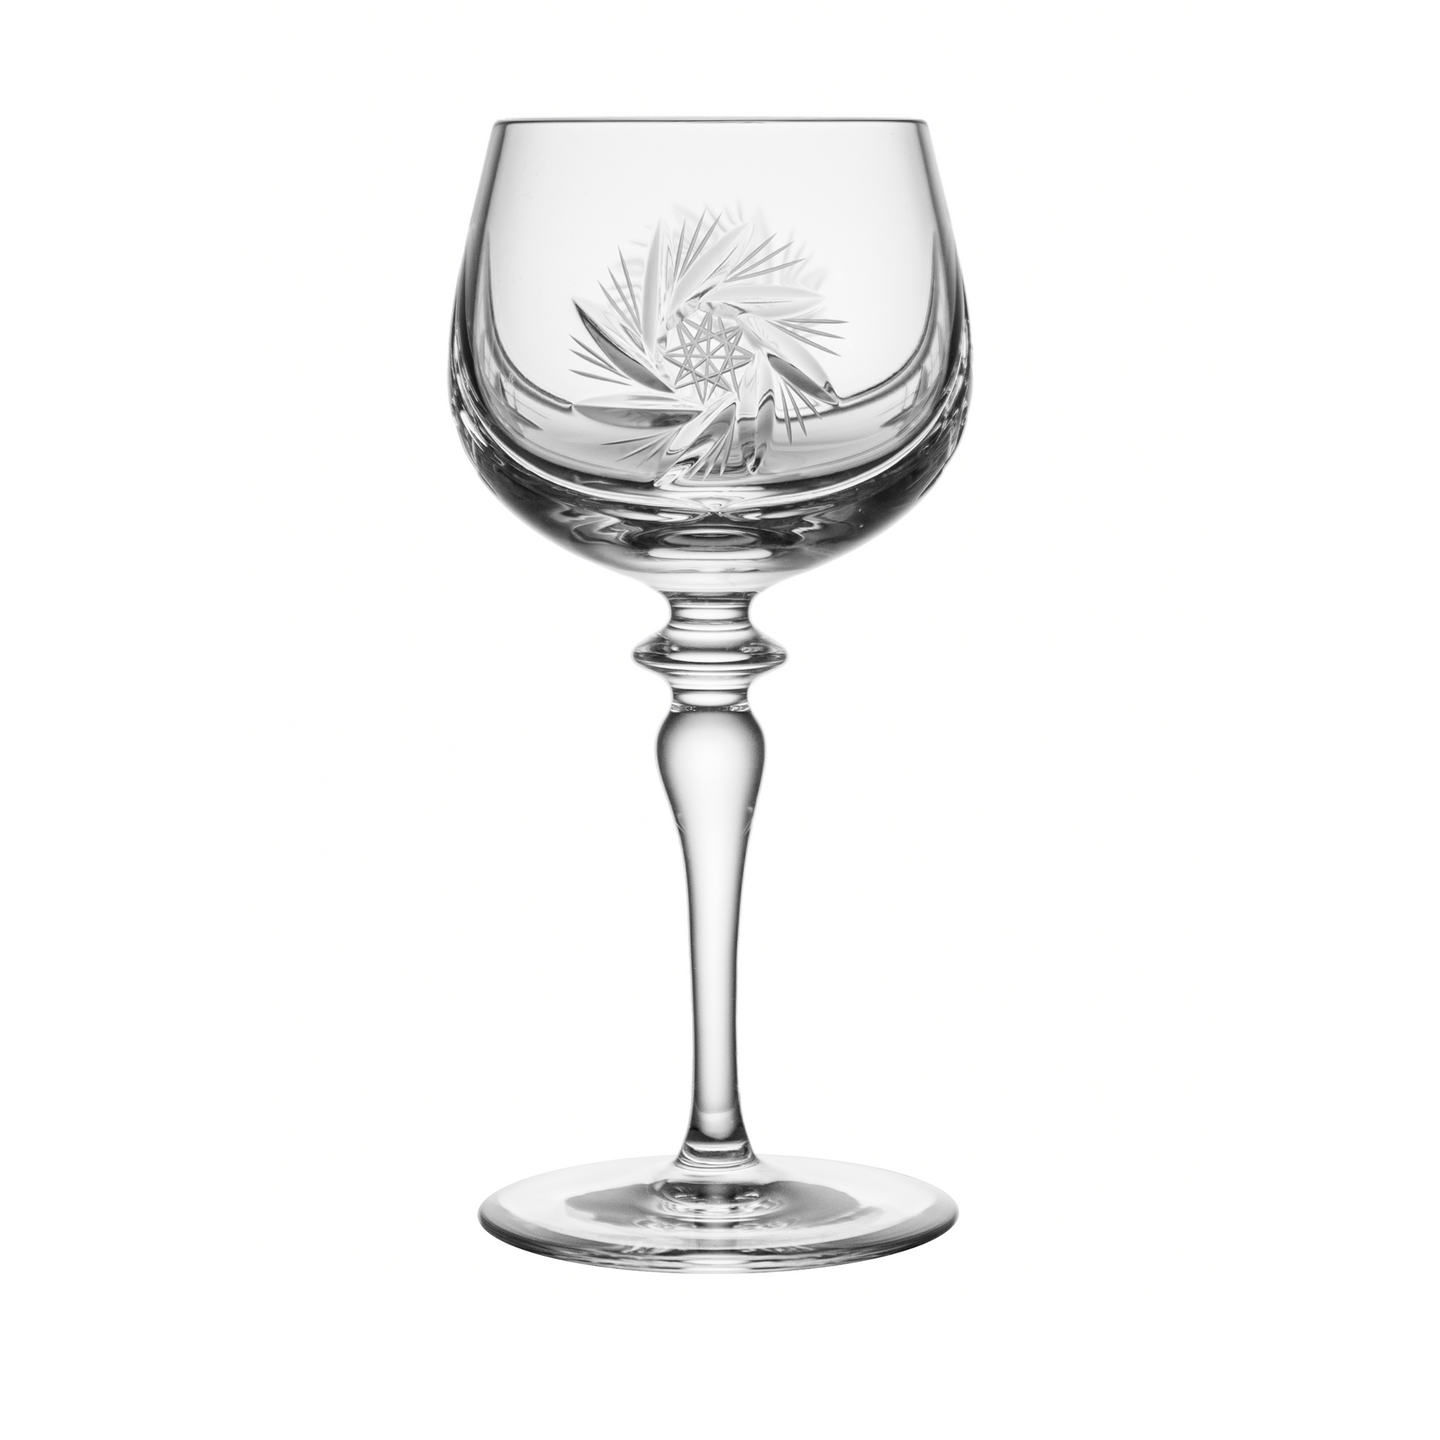 Avallon Small Wine Glass